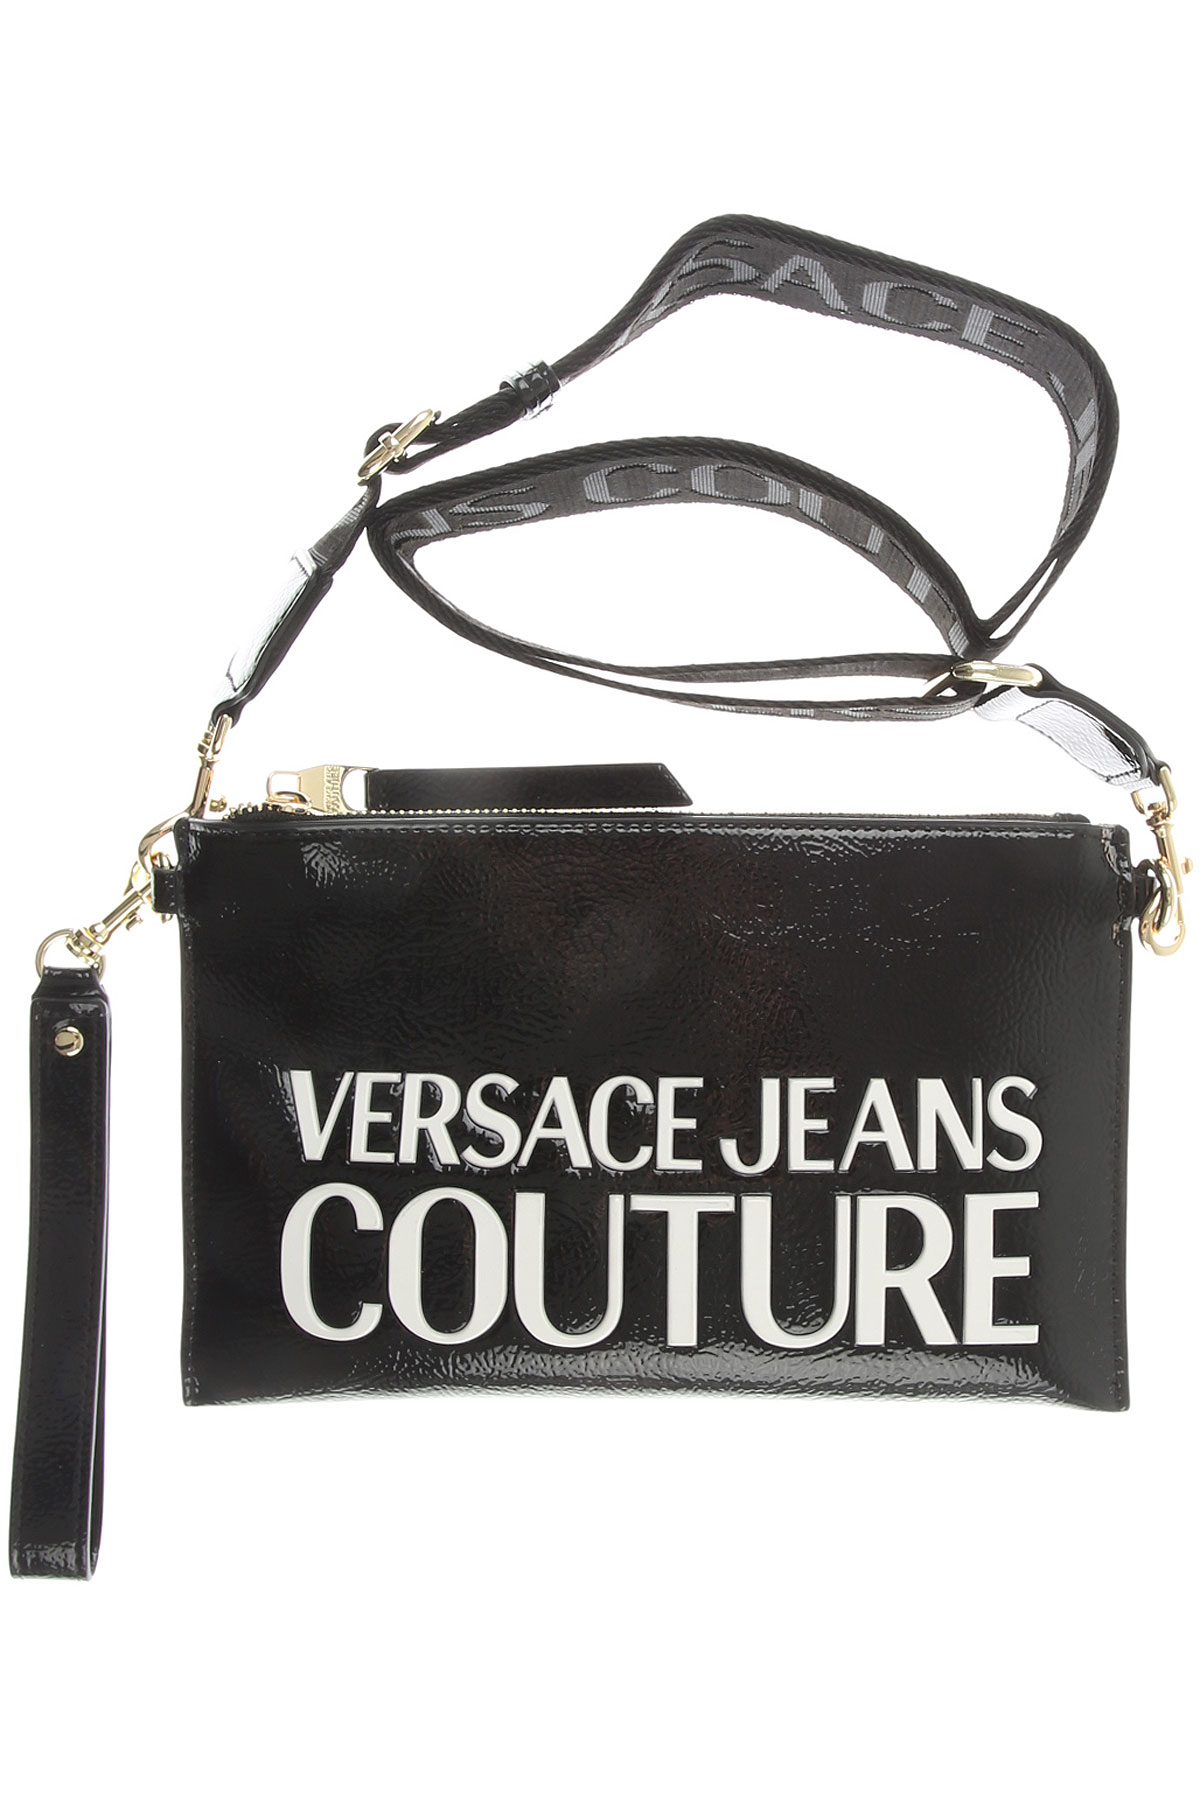 Handbags Versace Jeans Couture , Style code: e1vzabpx-71412-mi9